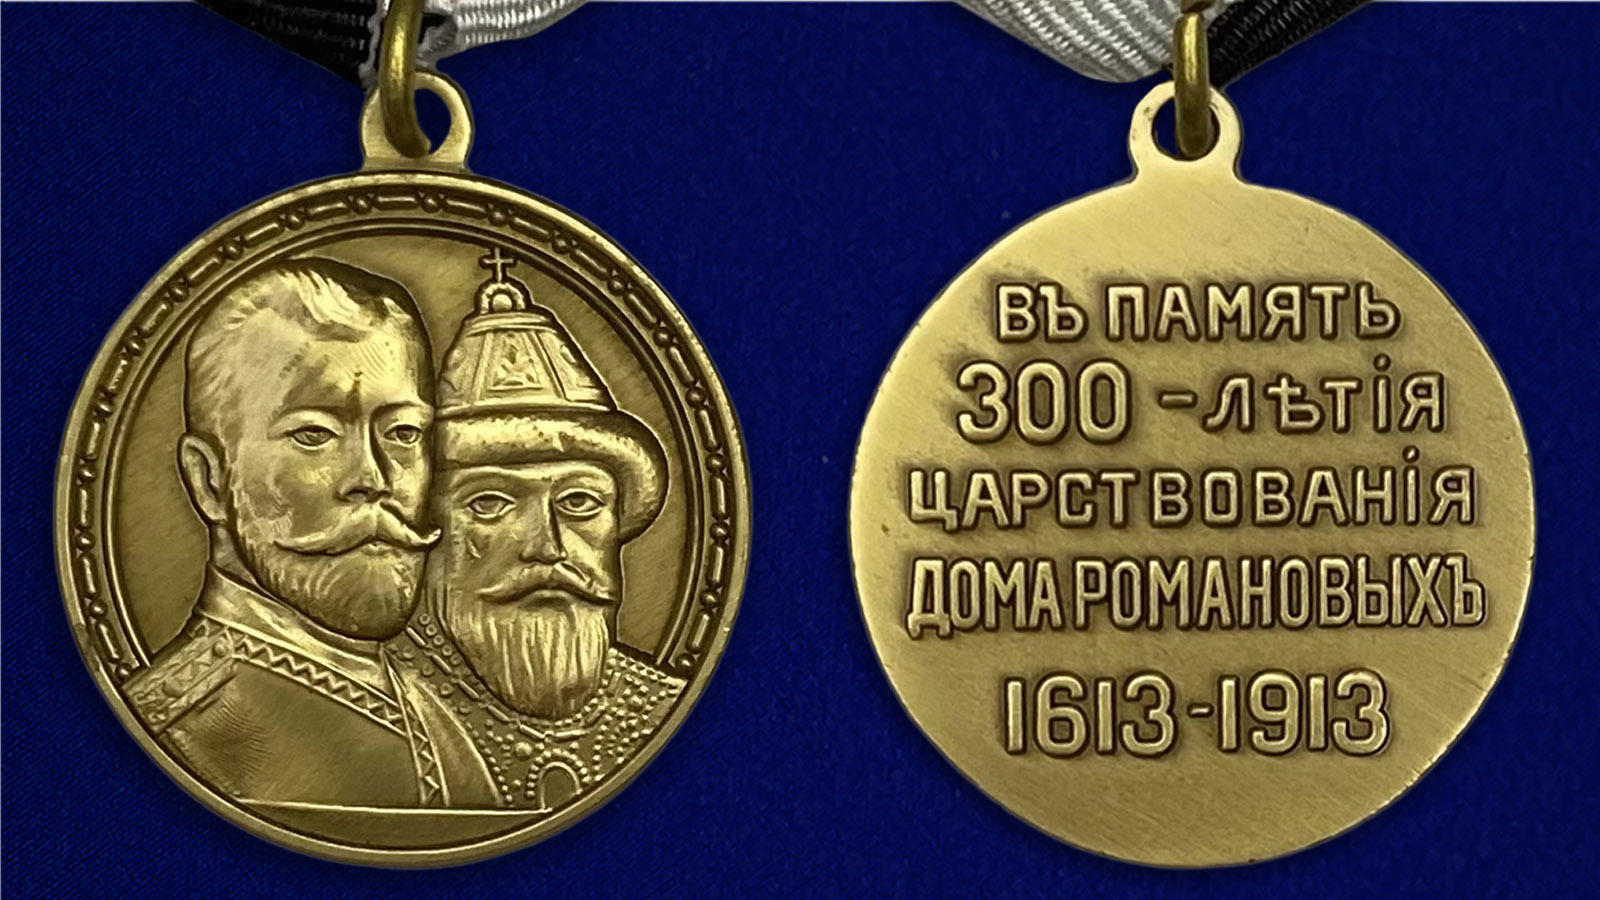 Описание медали "В память 300-летия царствования дома Романовых"